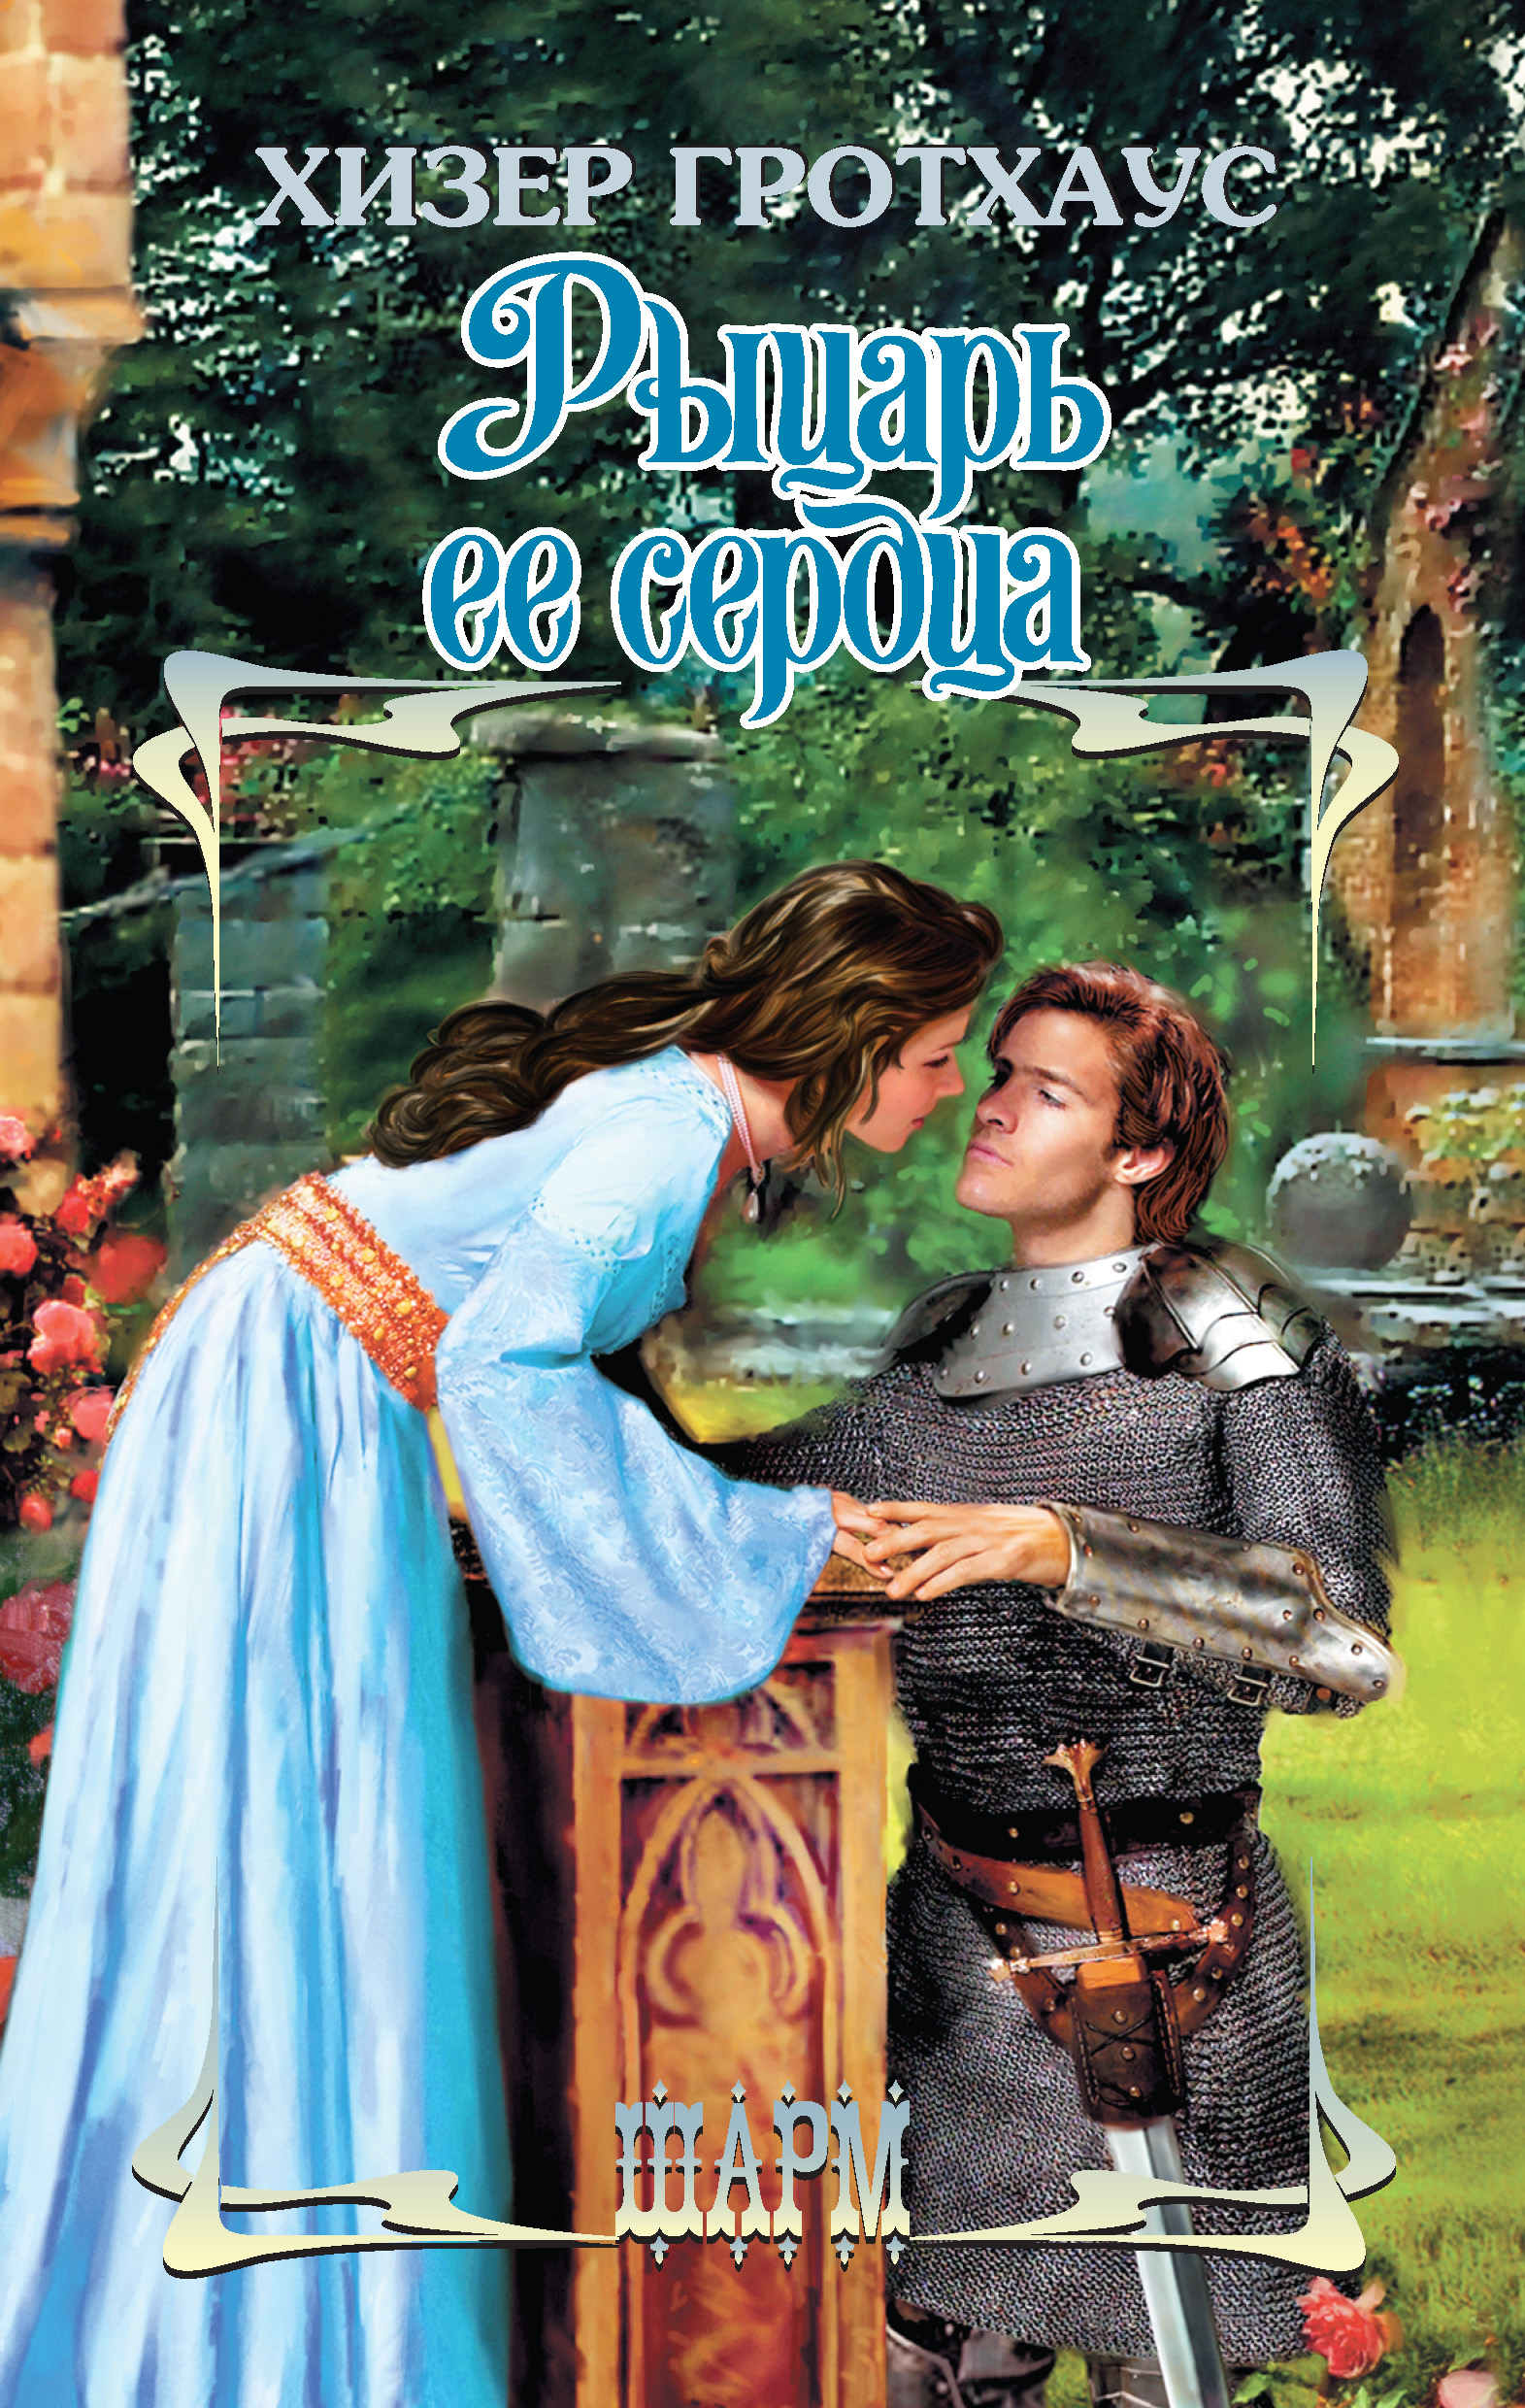 Читать про рыцарей. Любовные романы про рыцарей. Романы про рыцарей средневековья. Исторические любовные романы про рыцарей.